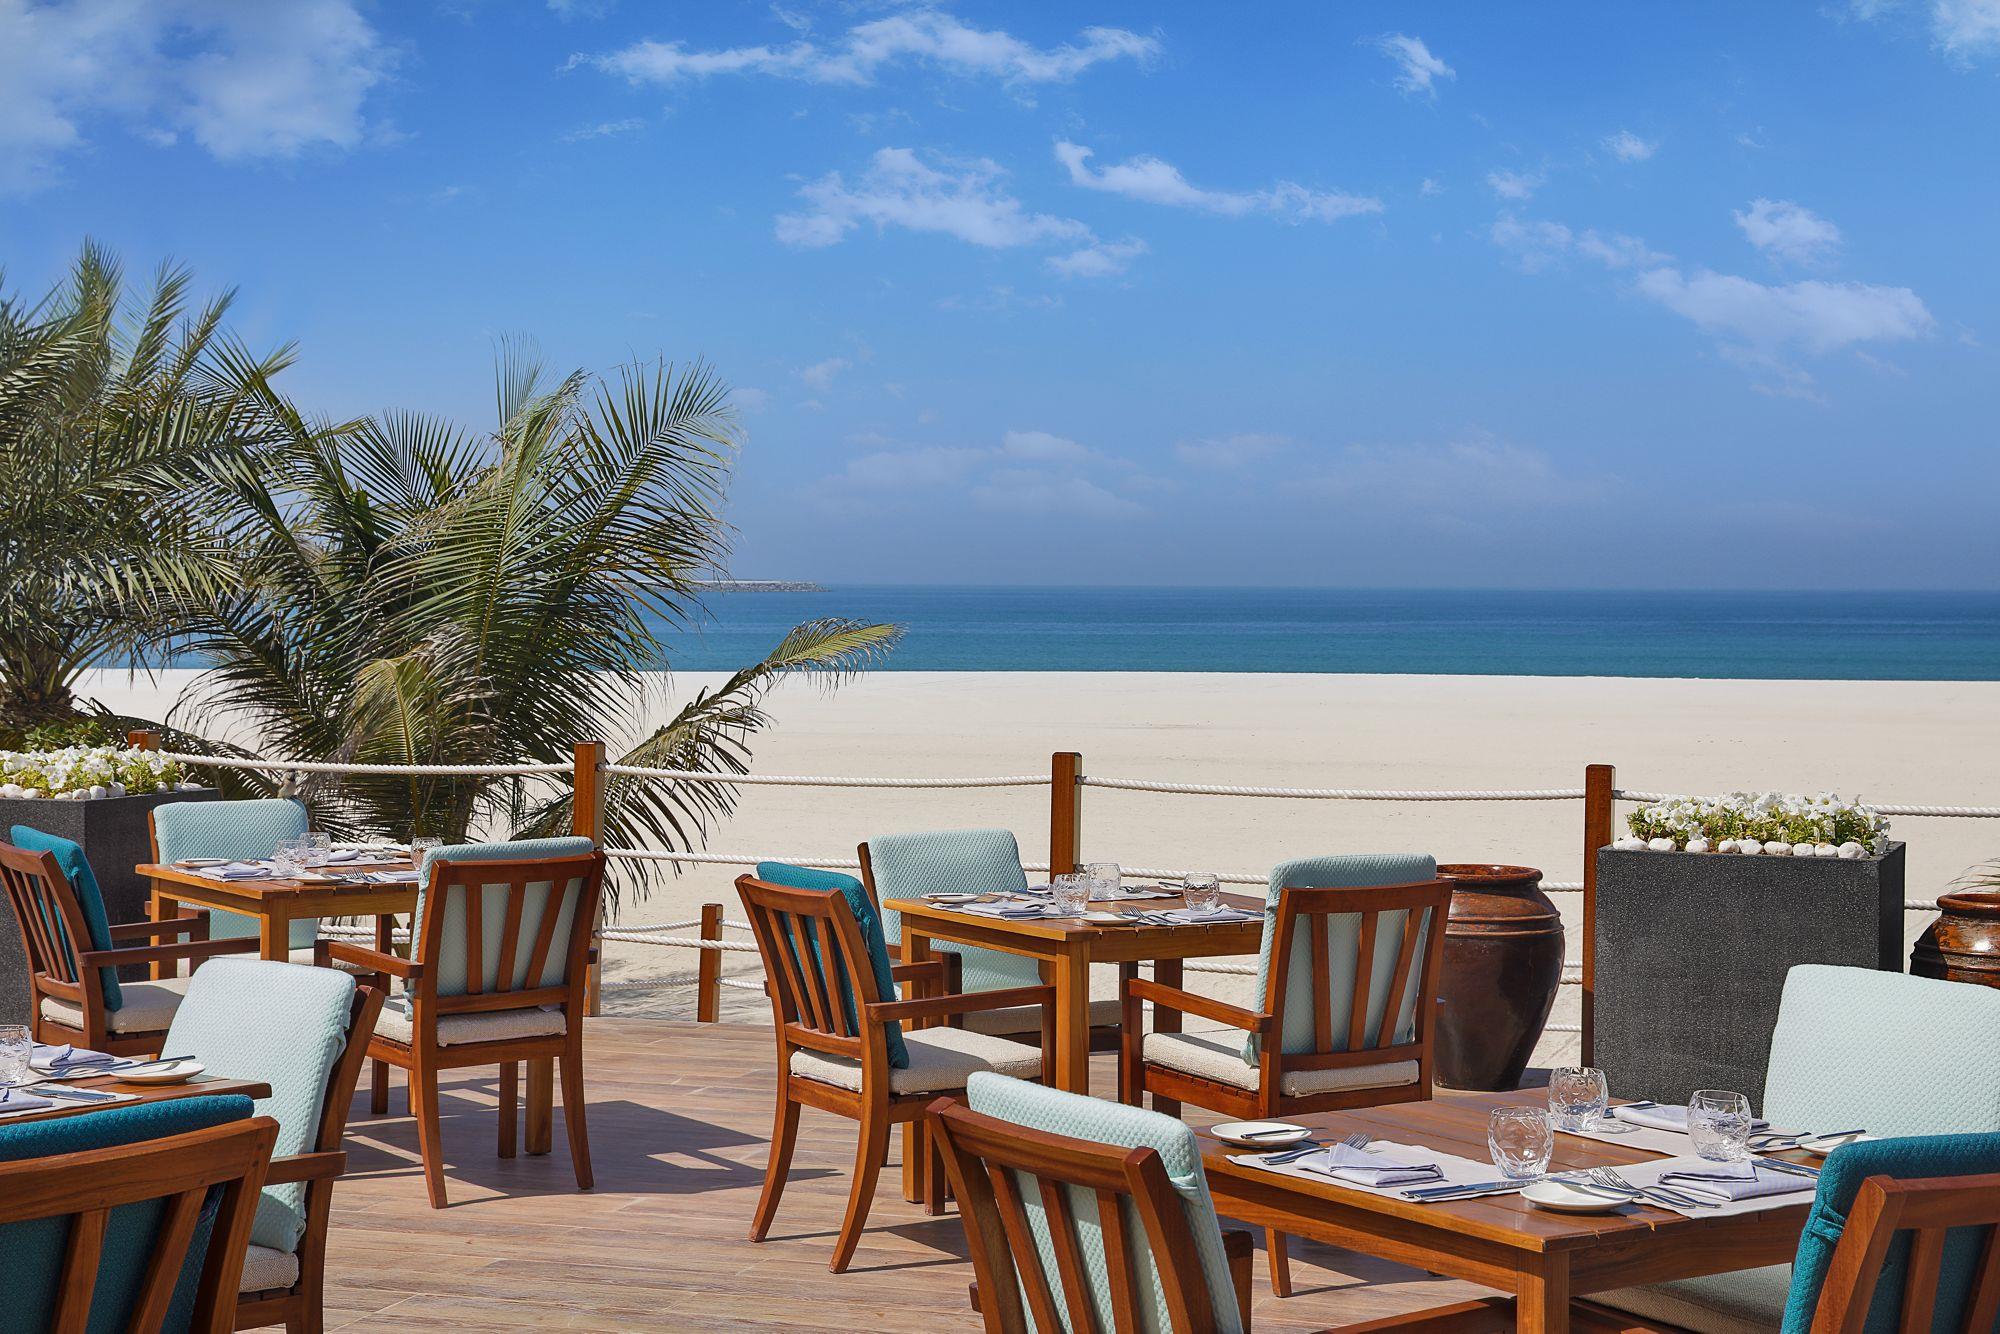 Аль хайм пляж. The Ritz-Carlton ras al Khaimah, al Hamra Beach. The Ritz Carlton al Hamra Beach 5*. Ritz ras al Khaimah. Ritz Carlton ras al Khaimah.